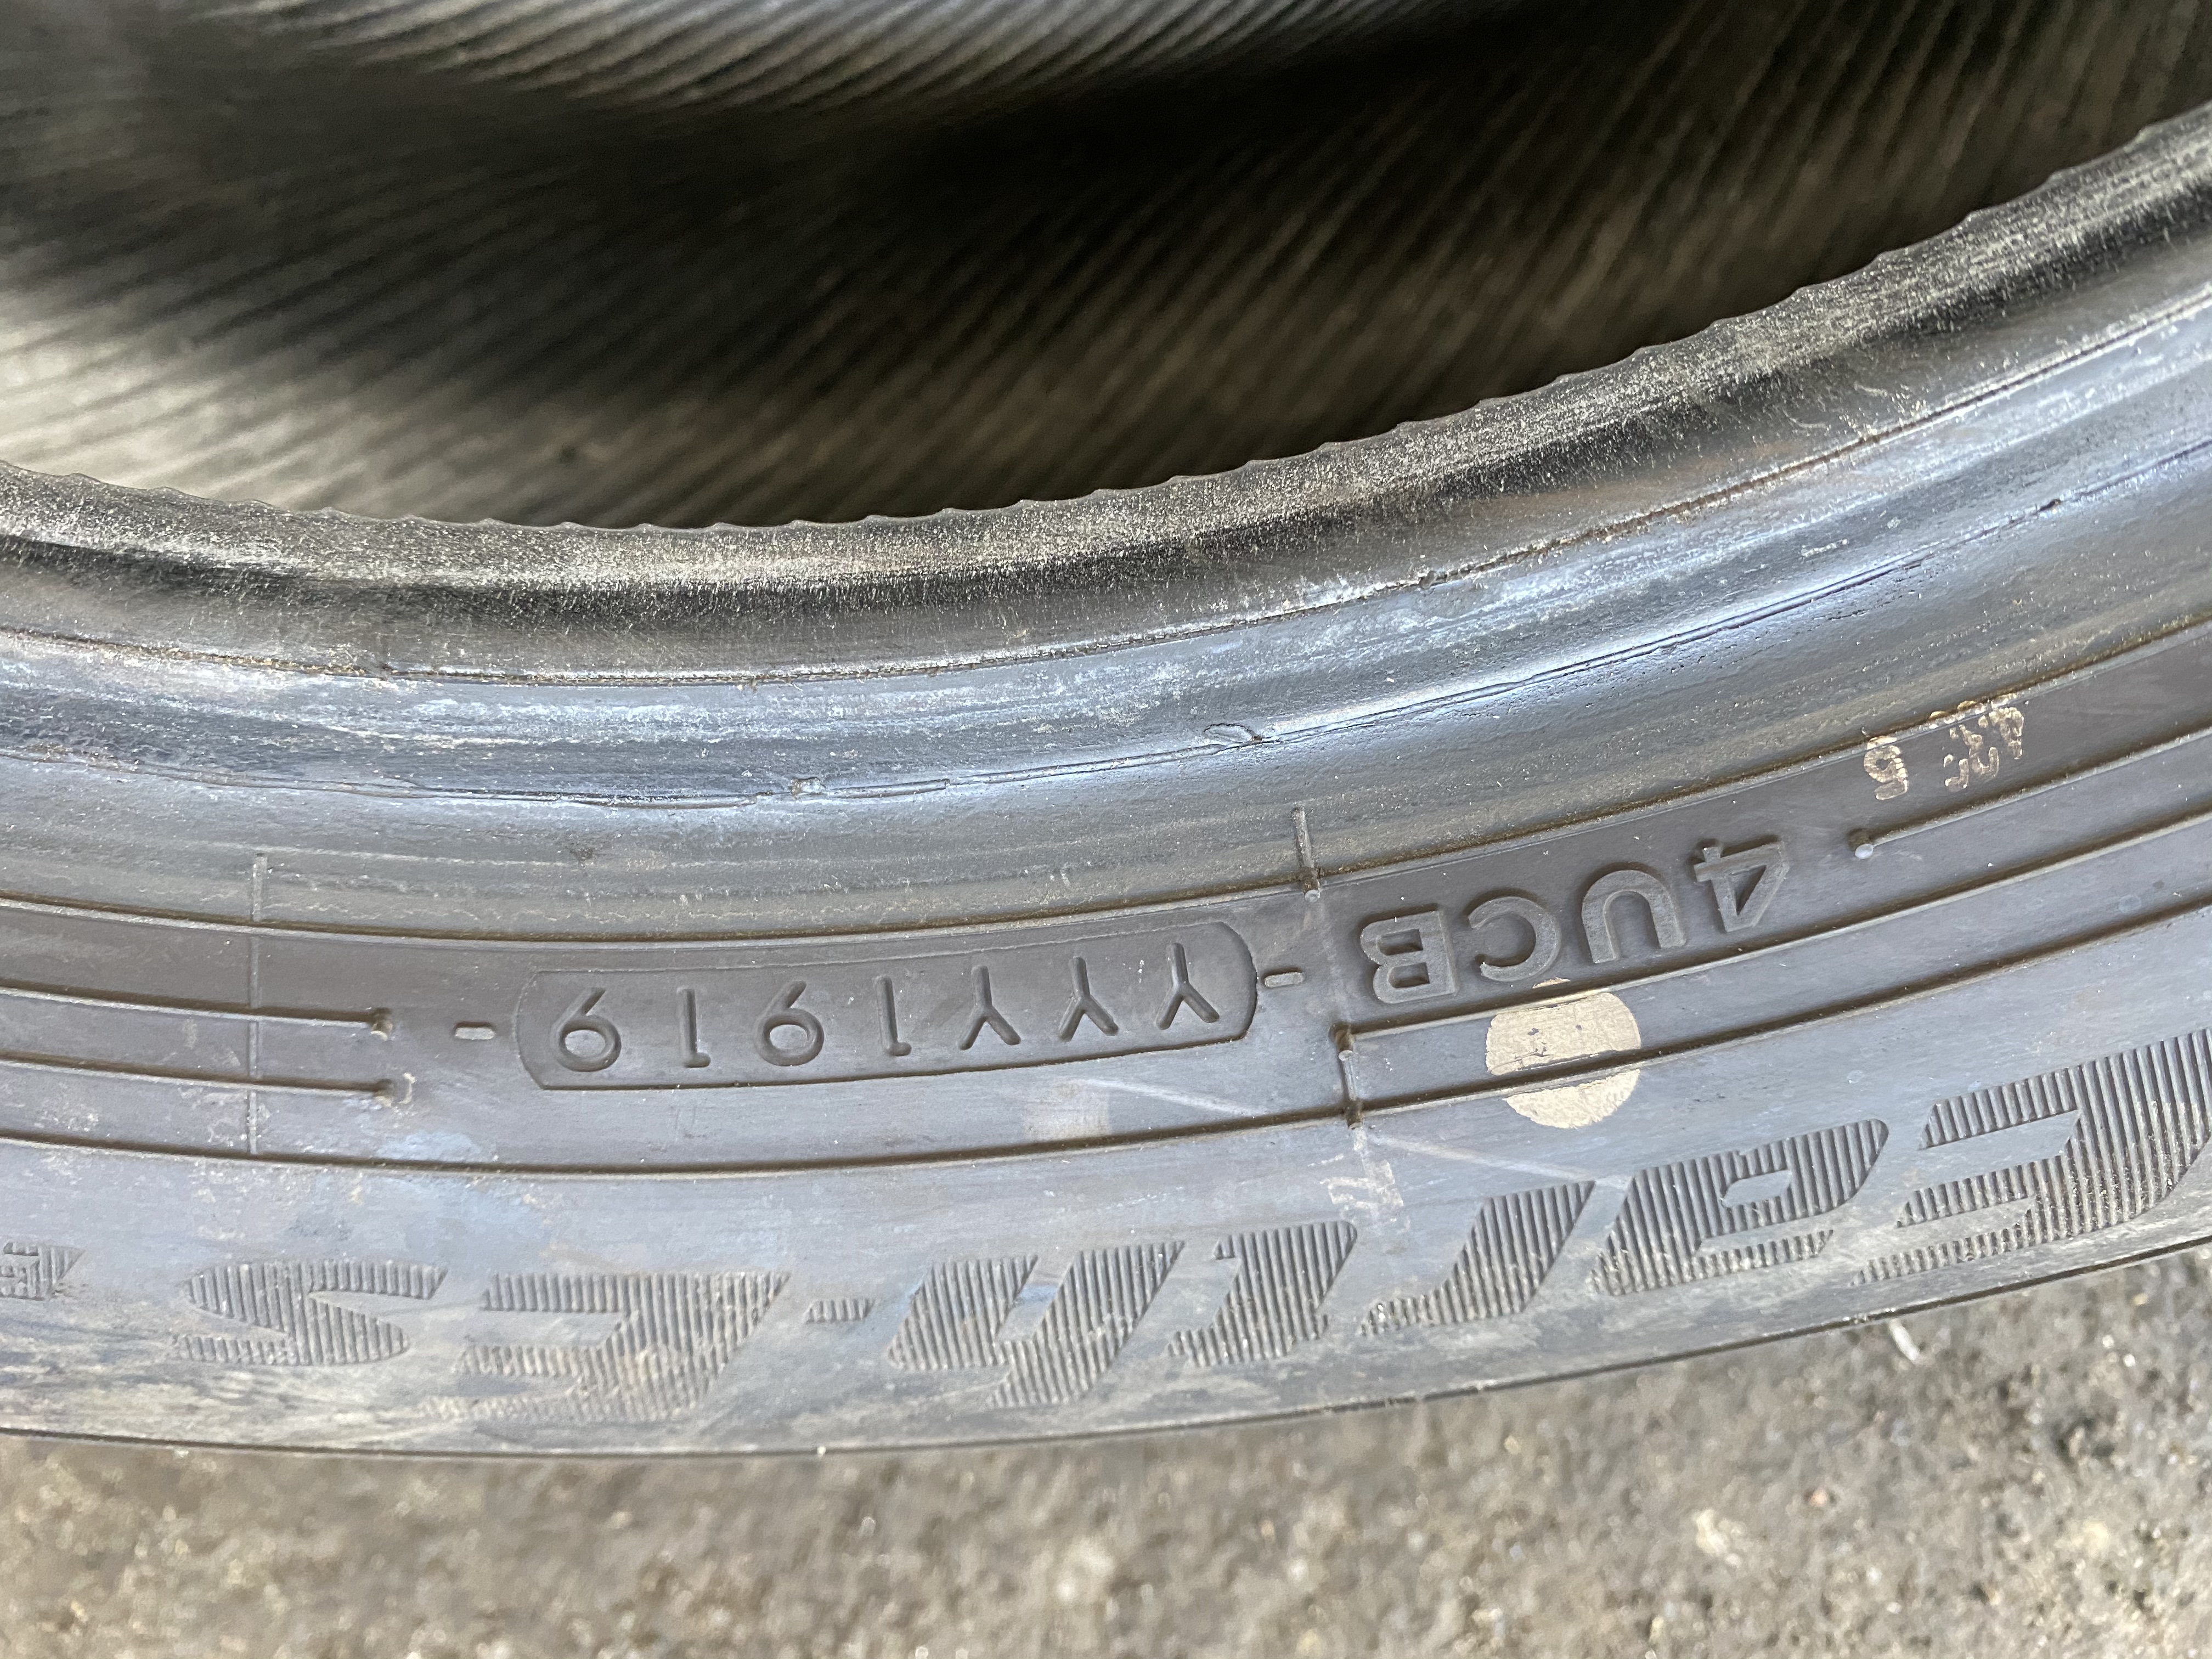 Yokohama tyres